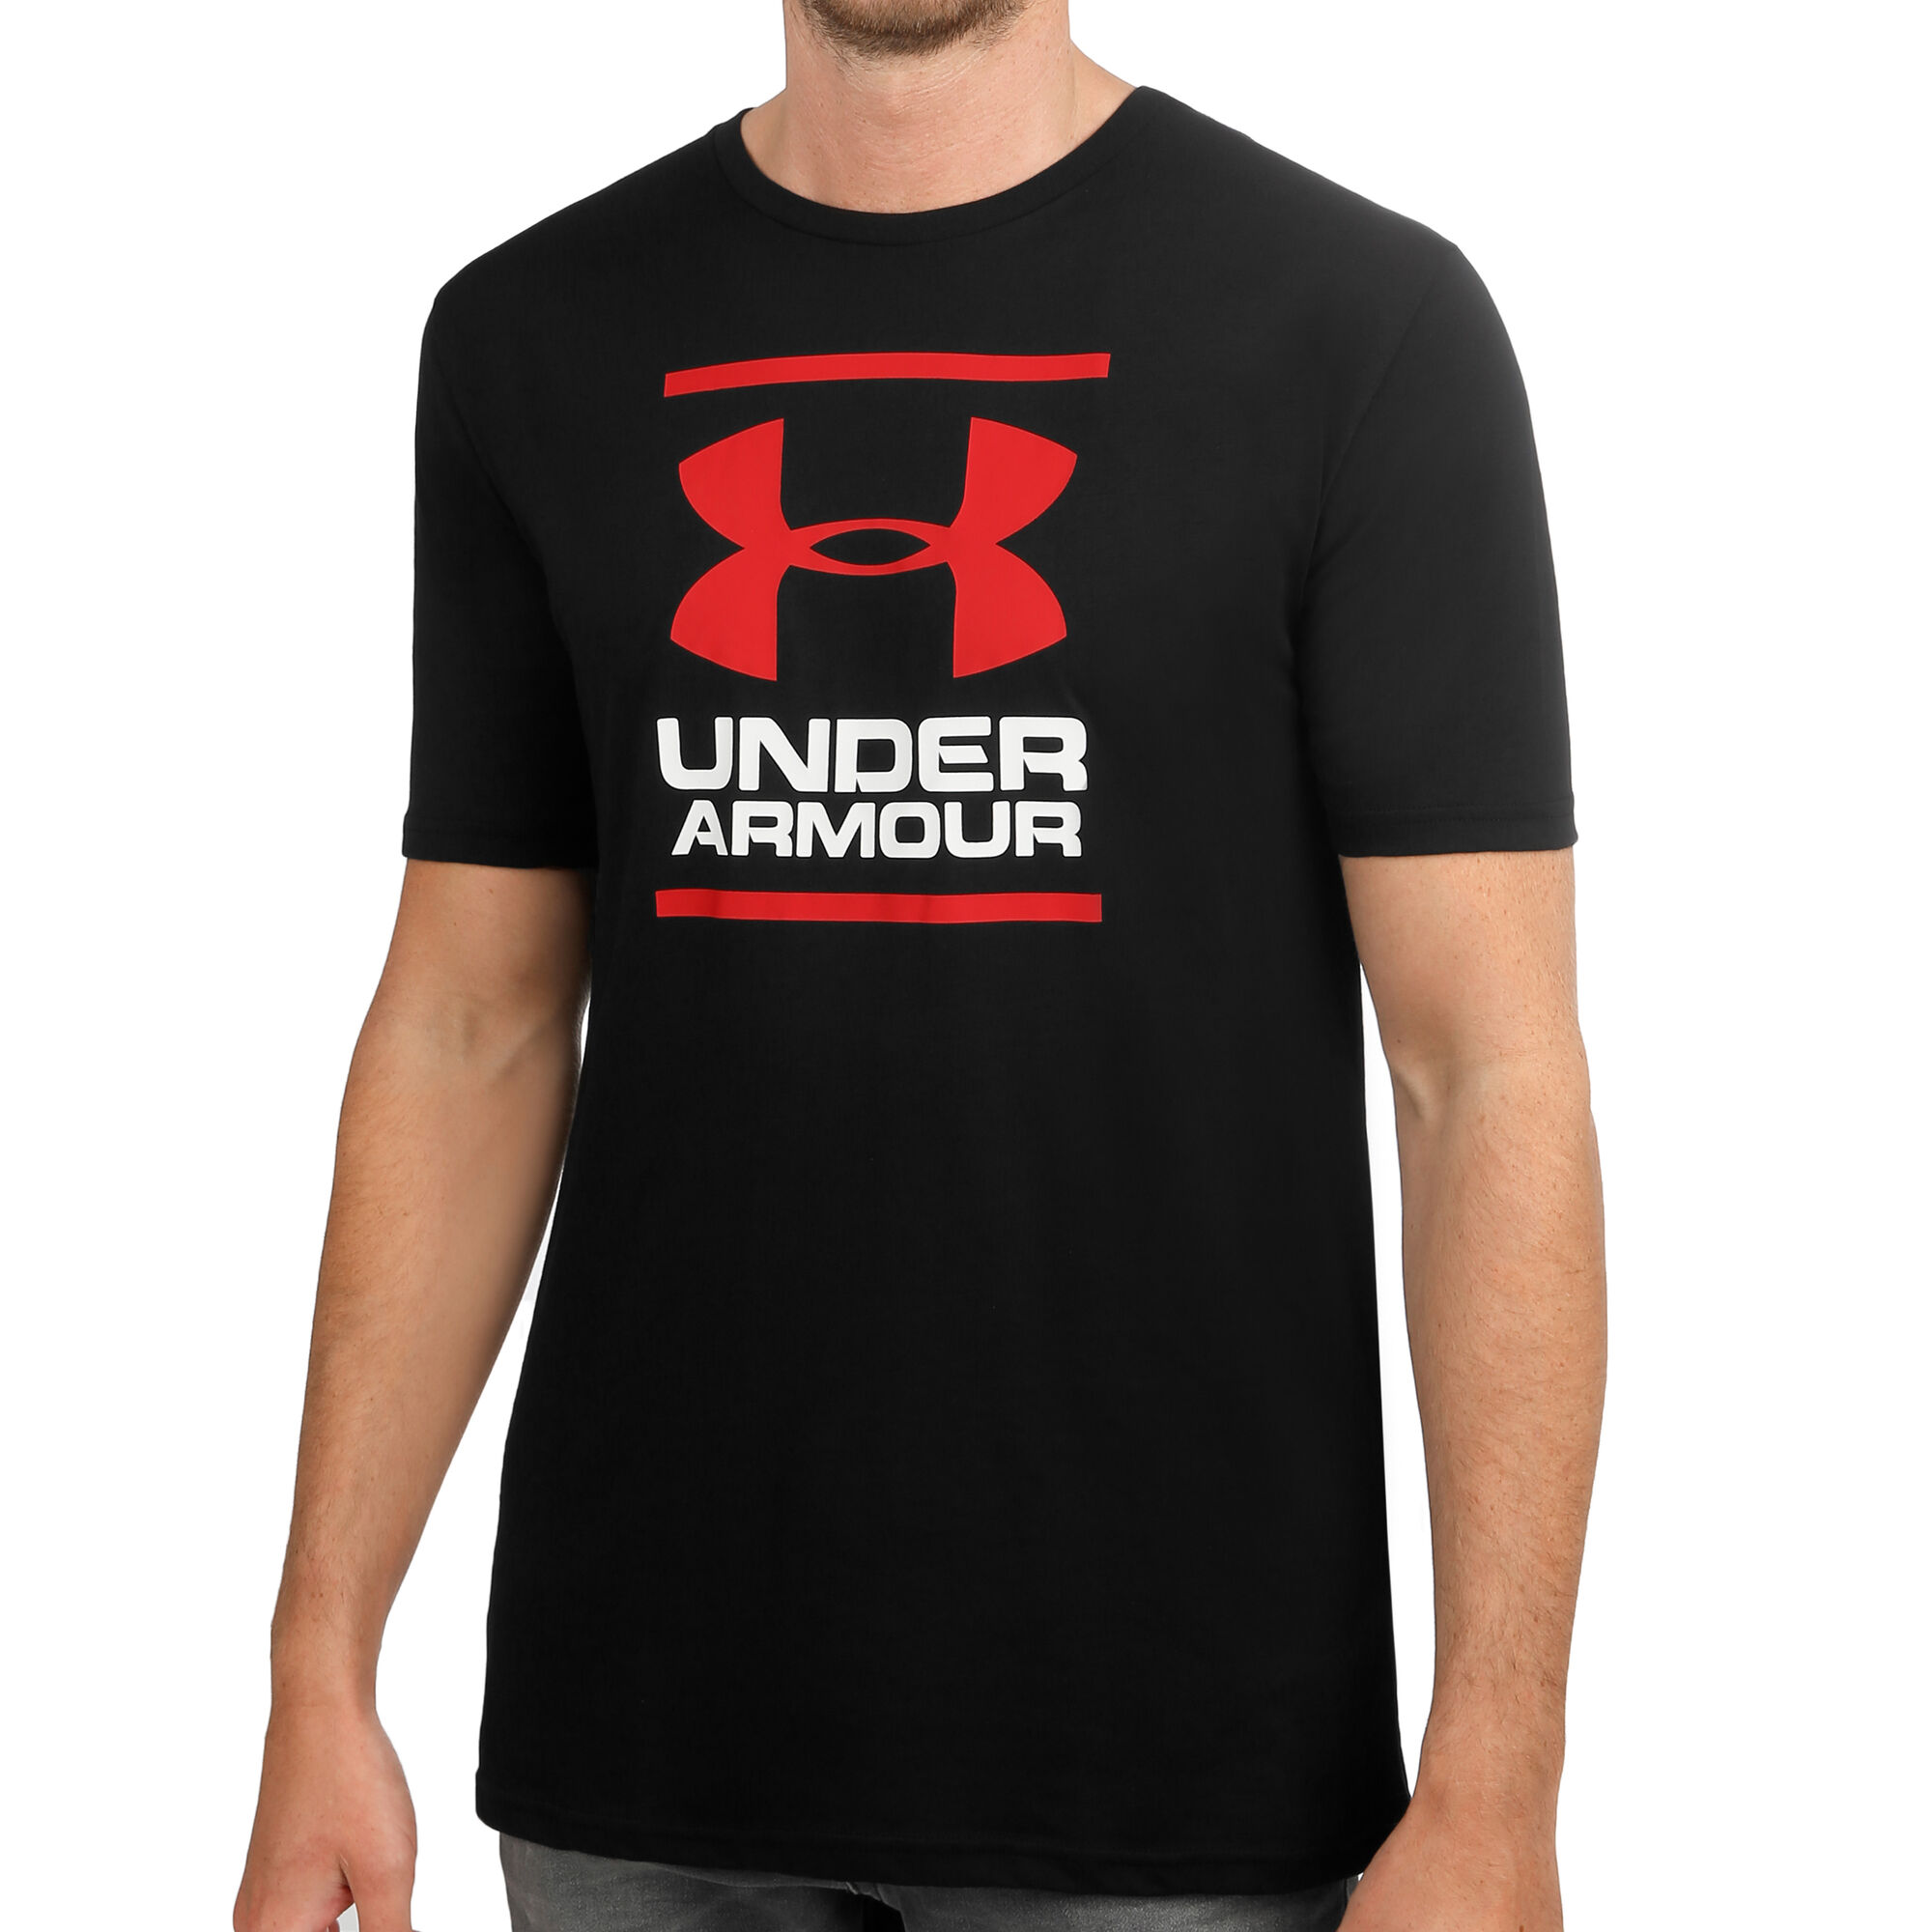 Under Armour GL Foundation Short Sleeve T-Shirt